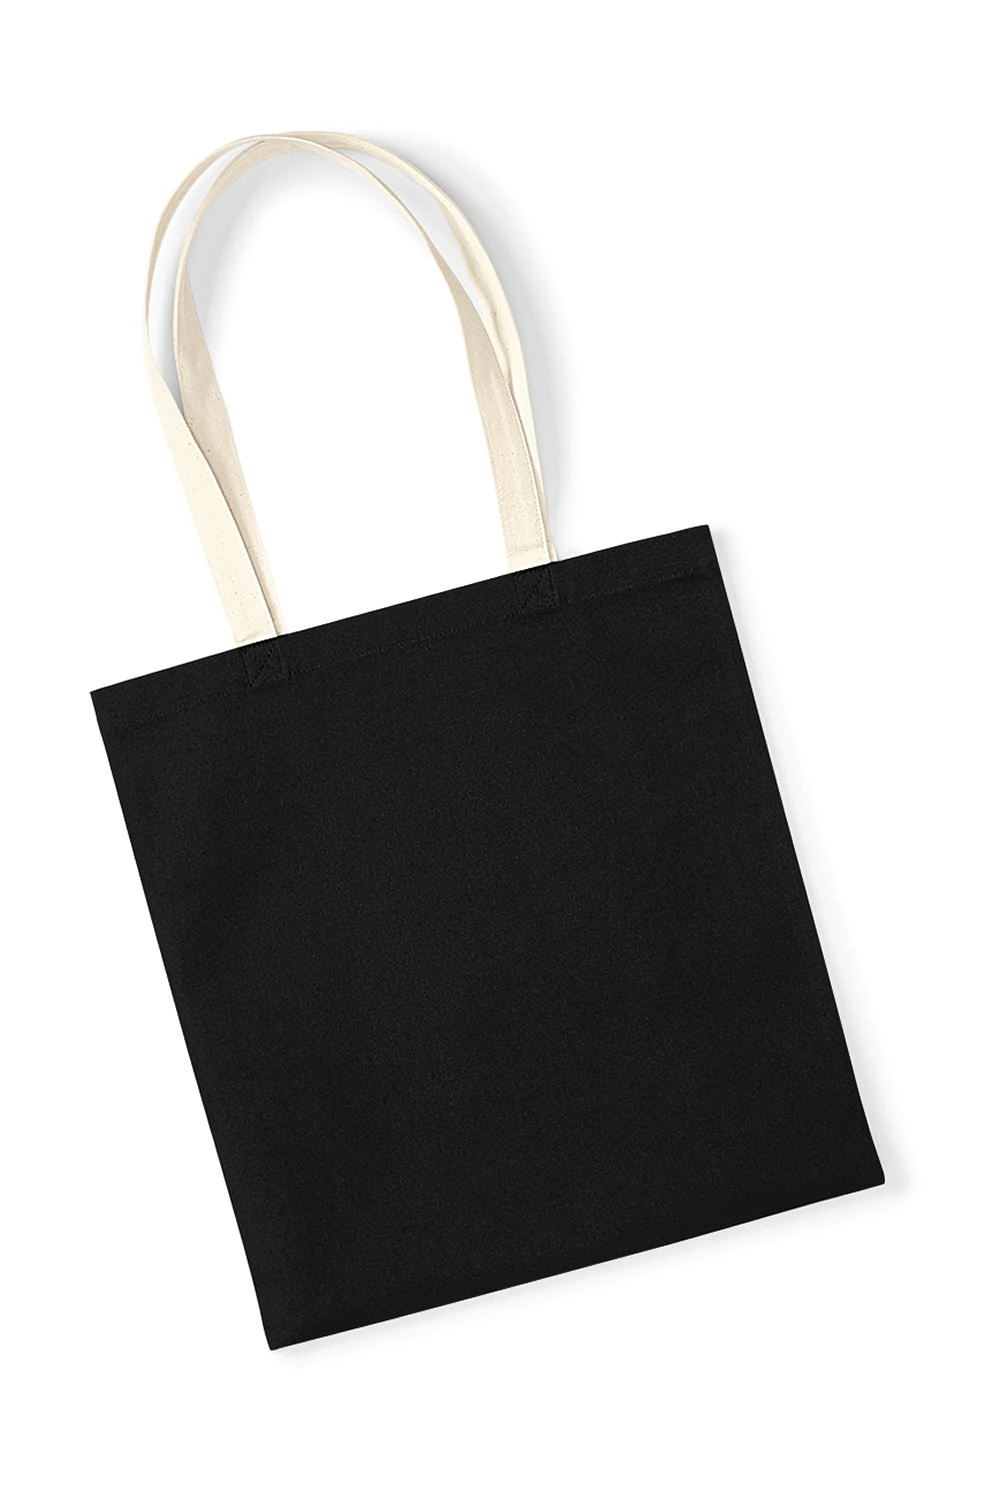 EarthAware™ Organic Bag for Life - Contrast Handle zum Besticken und Bedrucken in der Farbe Black/Natural mit Ihren Logo, Schriftzug oder Motiv.